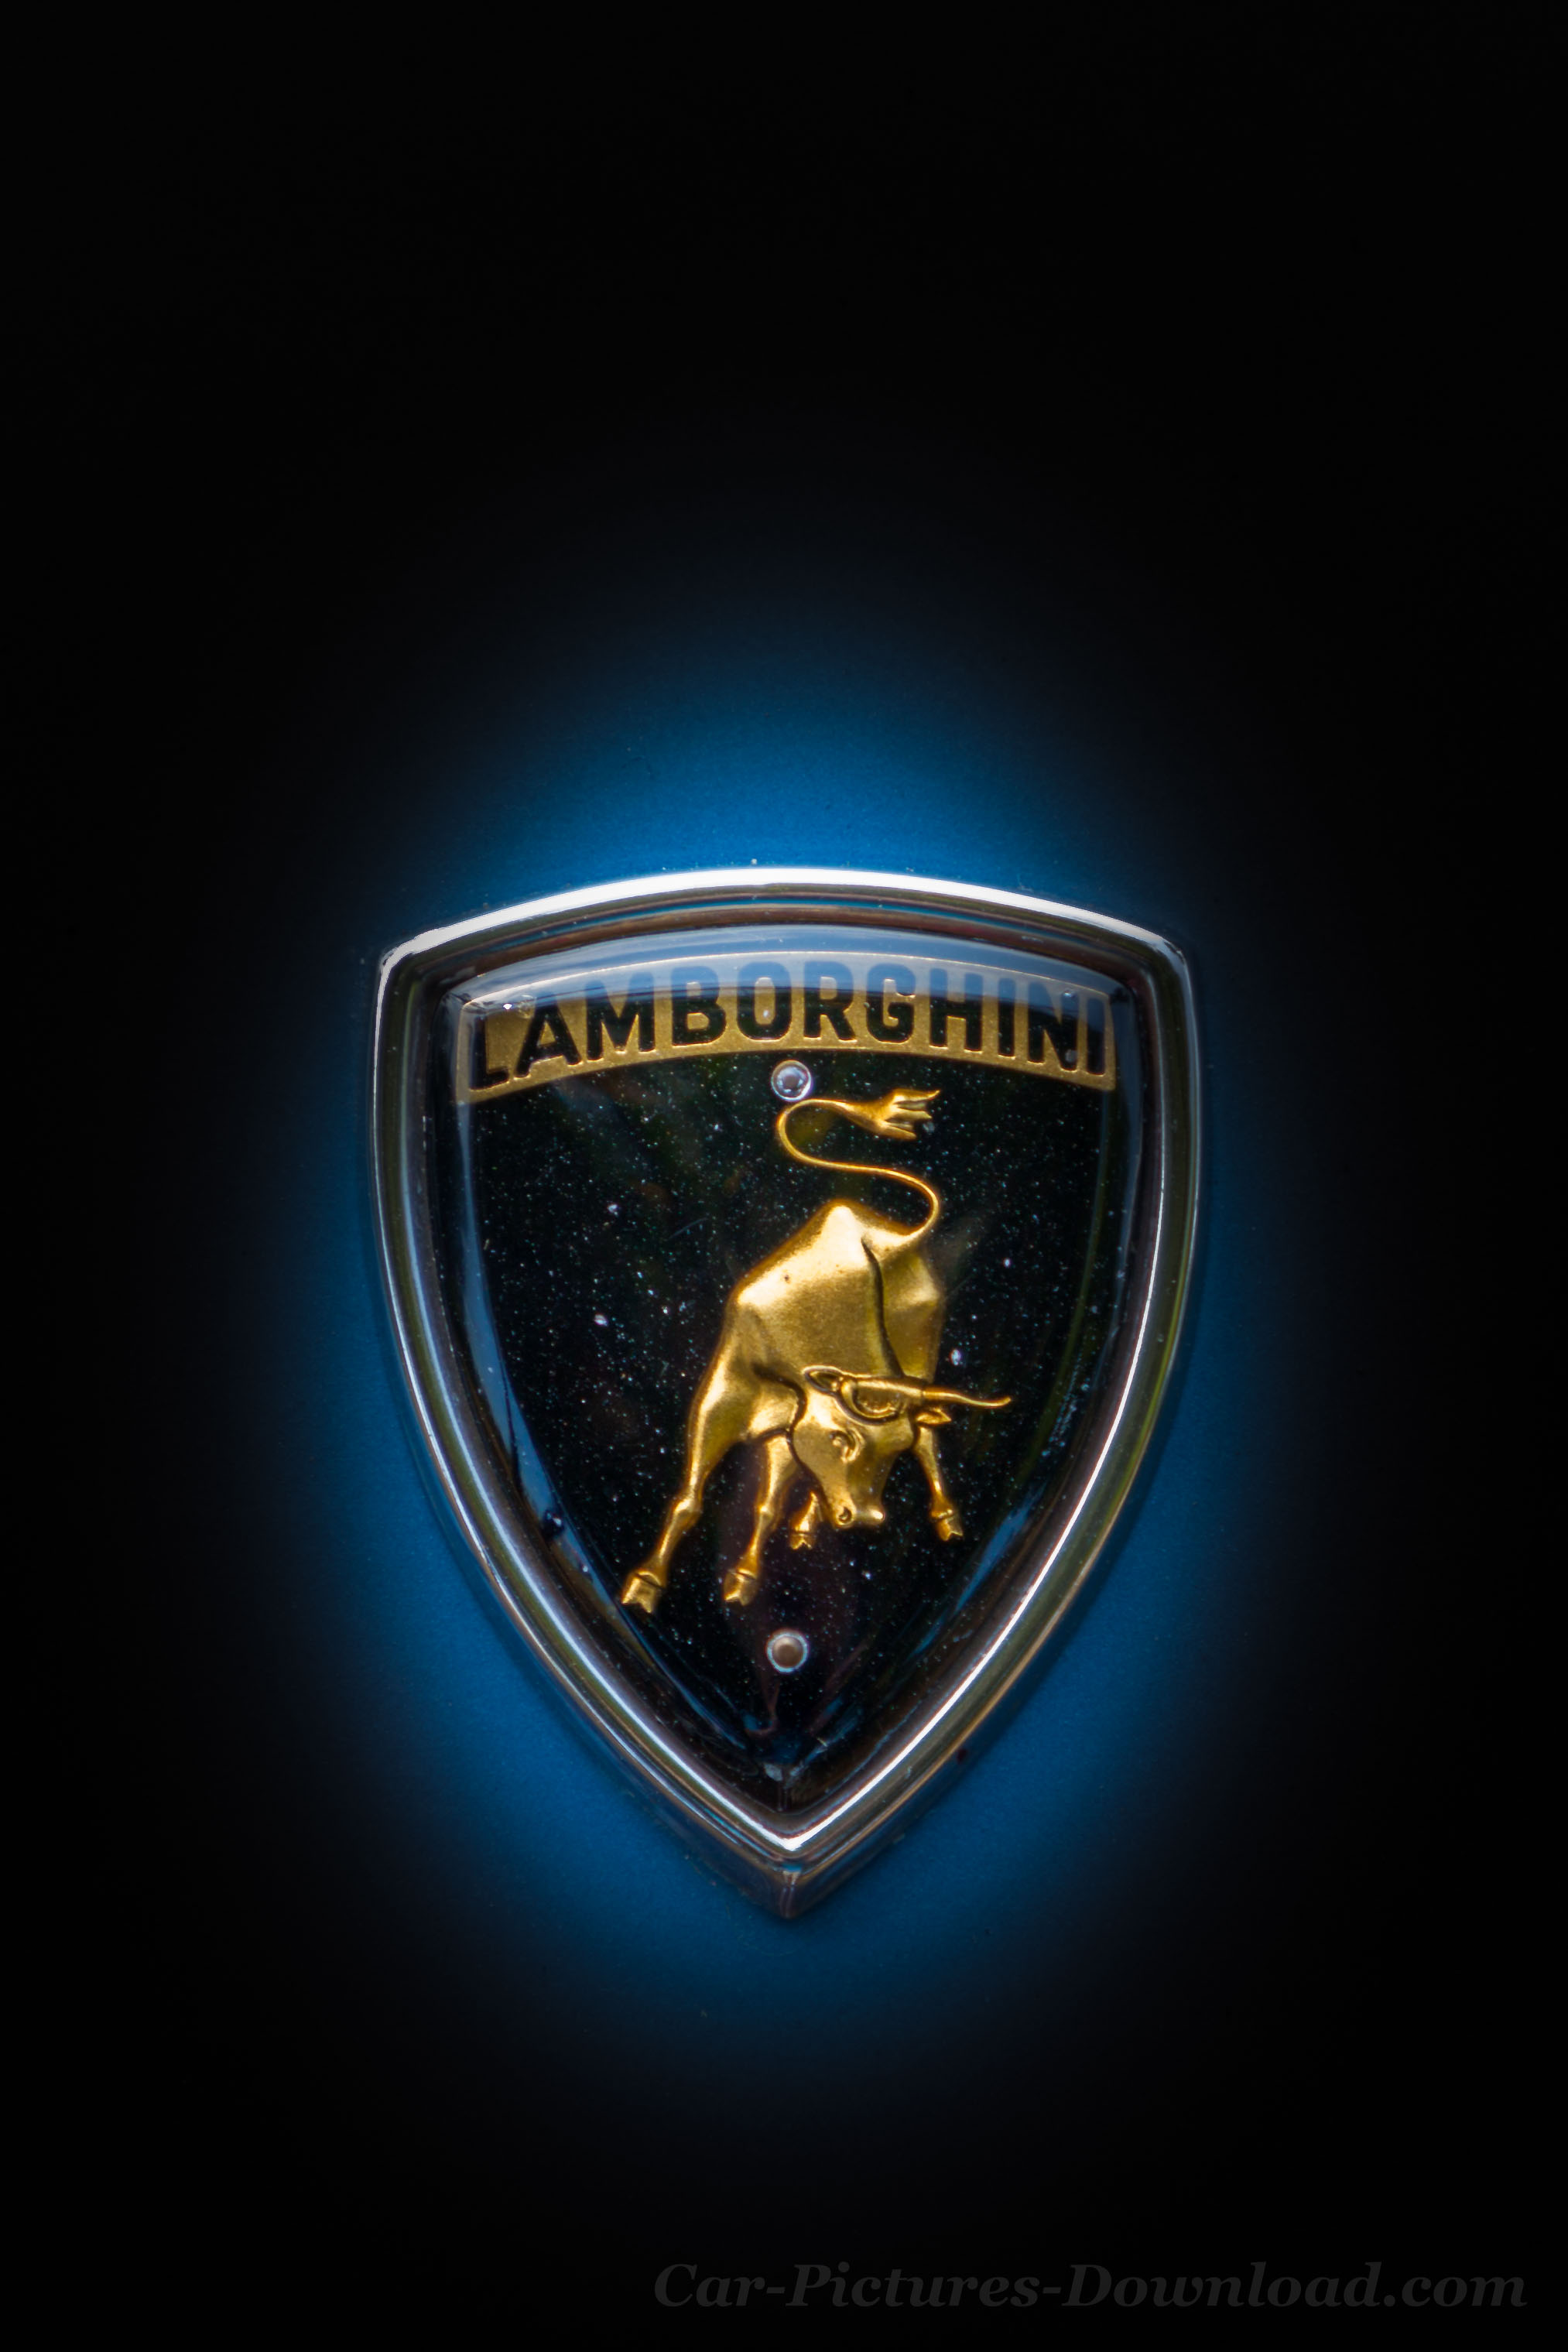 Lamborghini Wallpaper Images 4K Ultra HD Screens Free Download